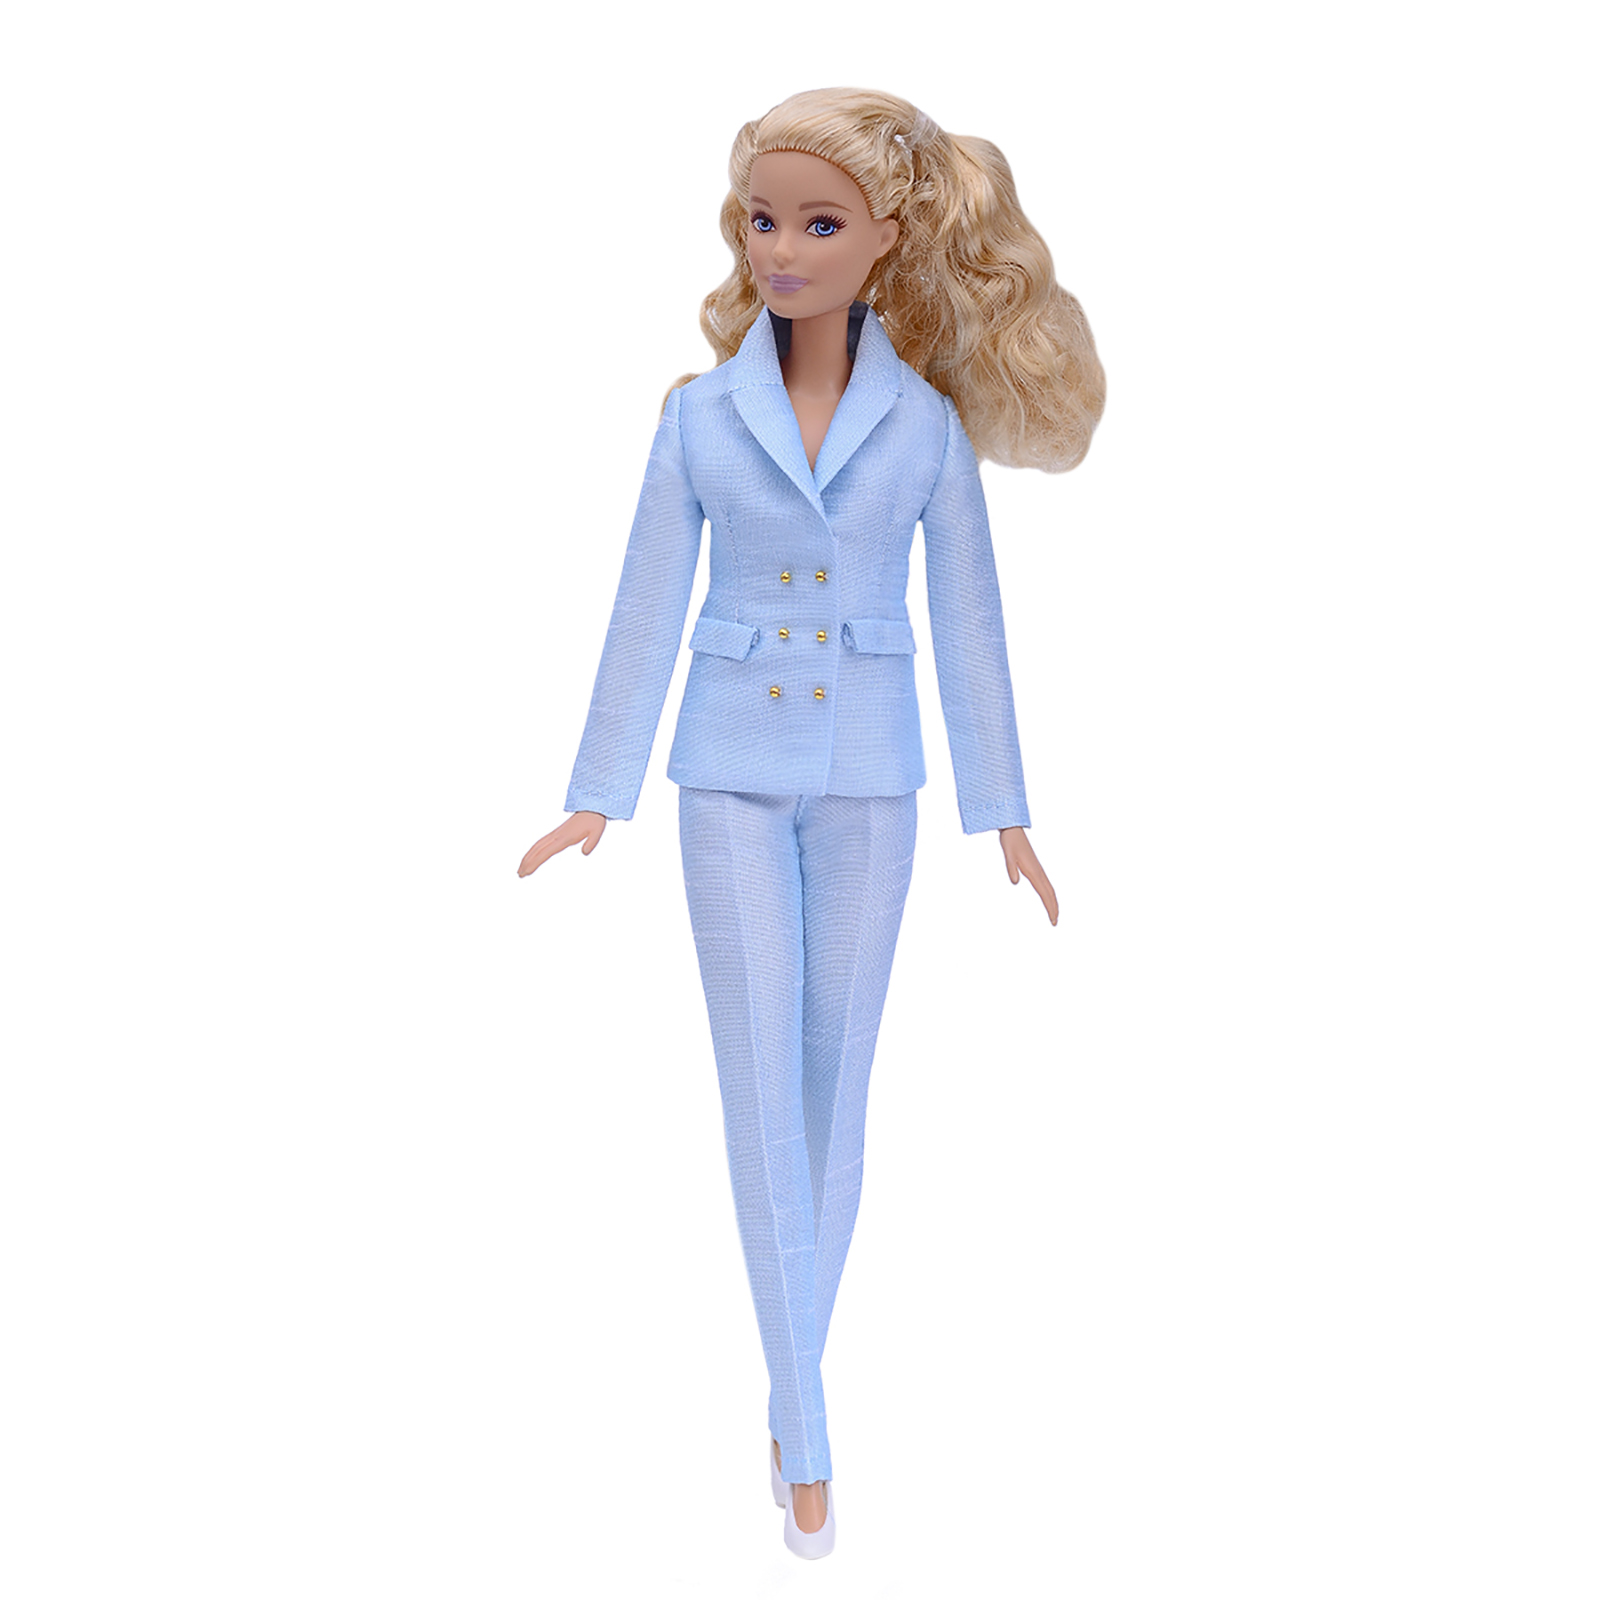 Шелковый брючный костюм Эленприв Светло-голубой для куклы 29 см типа Барби FA-011-09 - фото 1